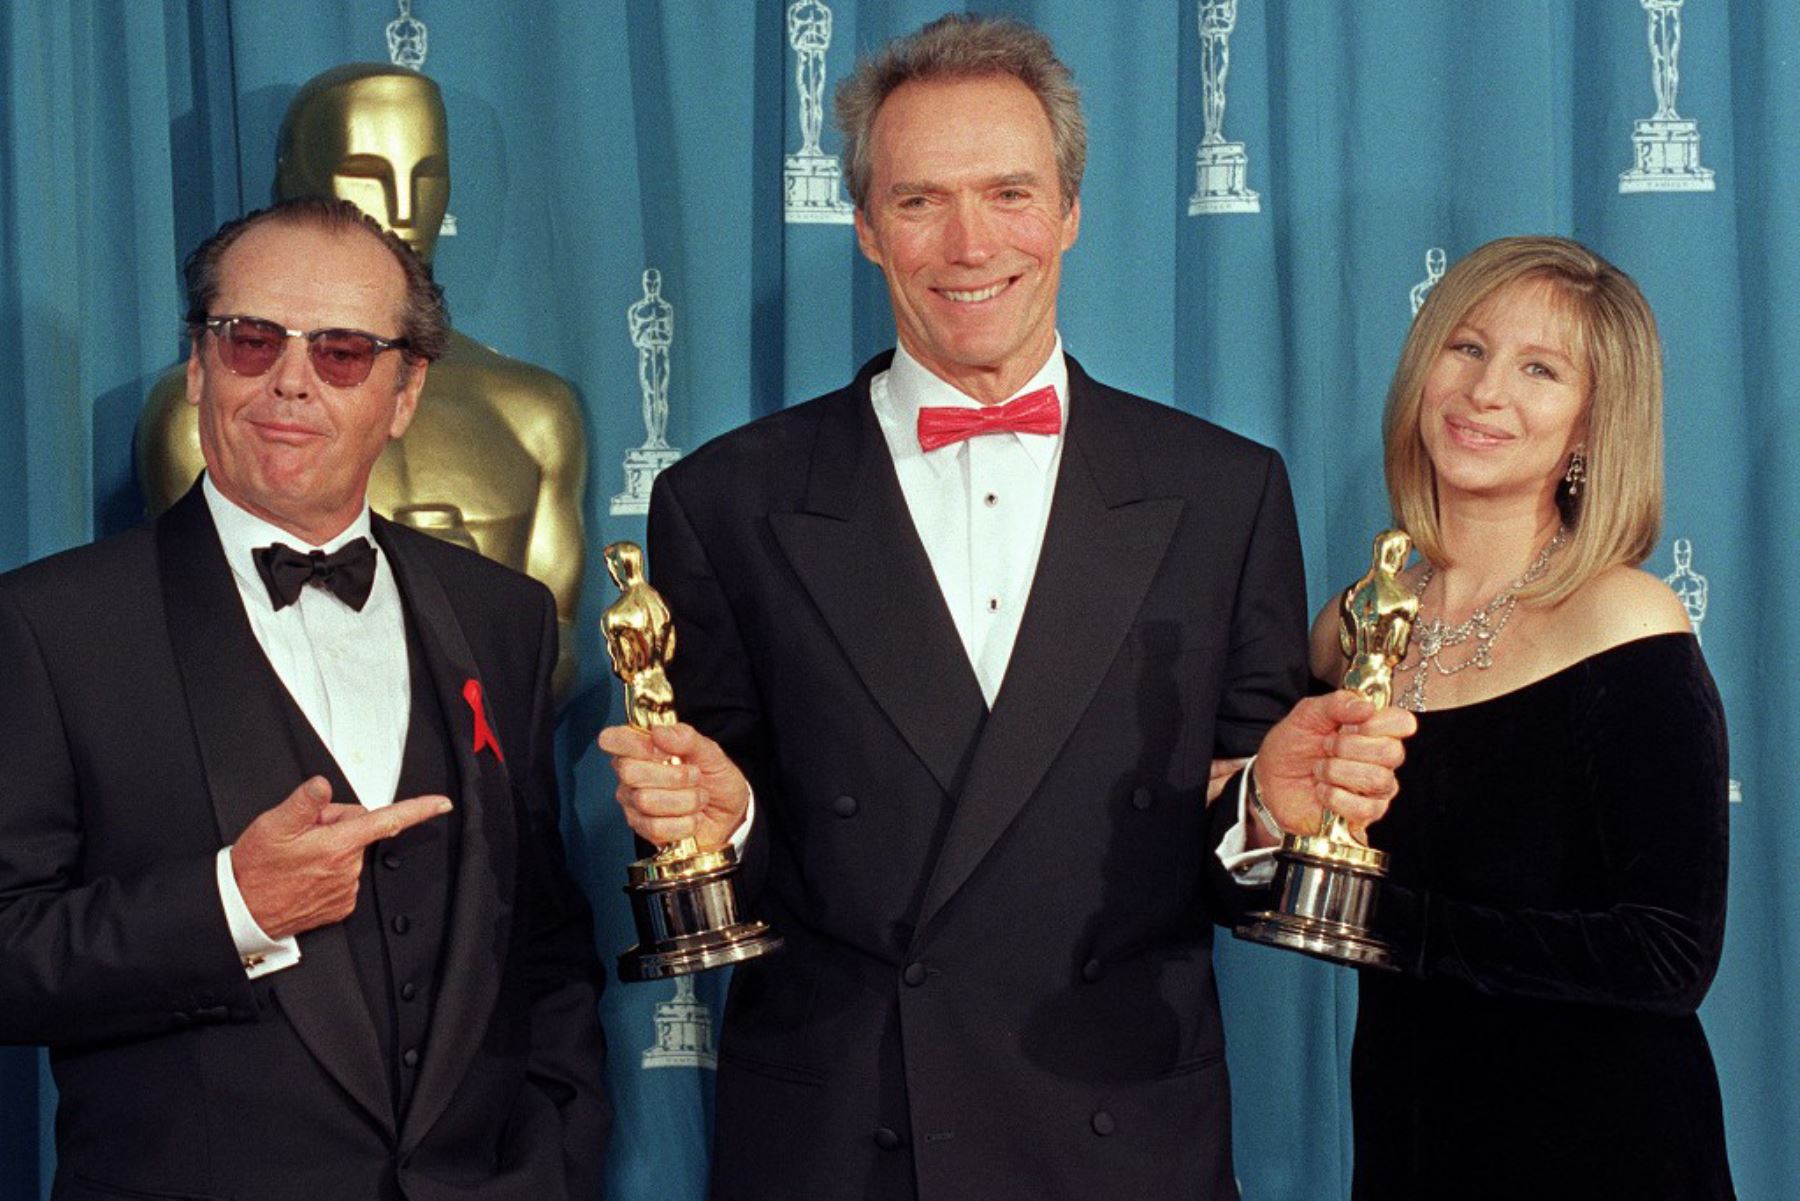 29 de marzo de 1993. El actor y director estadounidense Clint Eastwood muestra sus dos Oscar en la 65 Entrega Anual de los Premios de la Academia, que ganó como Mejor Director y Mejor Película por "Unforgiven”. Posa con los presentadores, el actor Jack Nicholson y la actriz Barbra Streisand. Foto: AFP